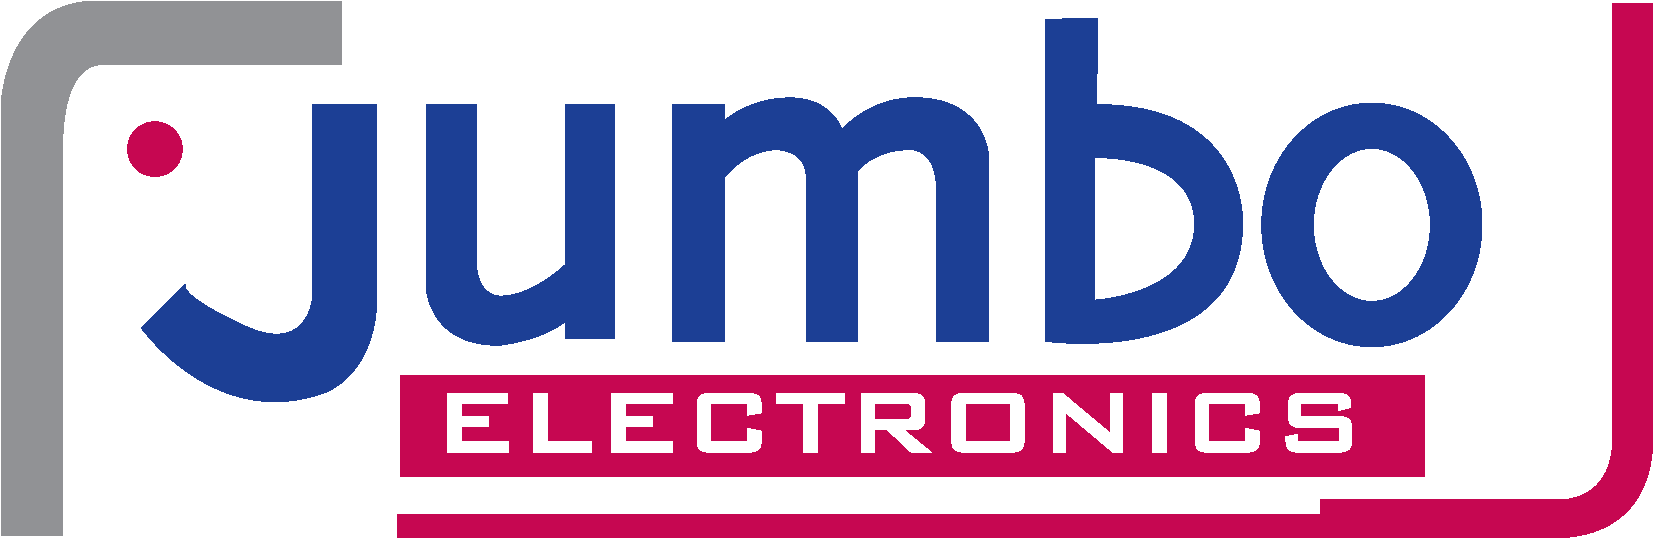 Jumbo Electronics (1772x681), Png Download